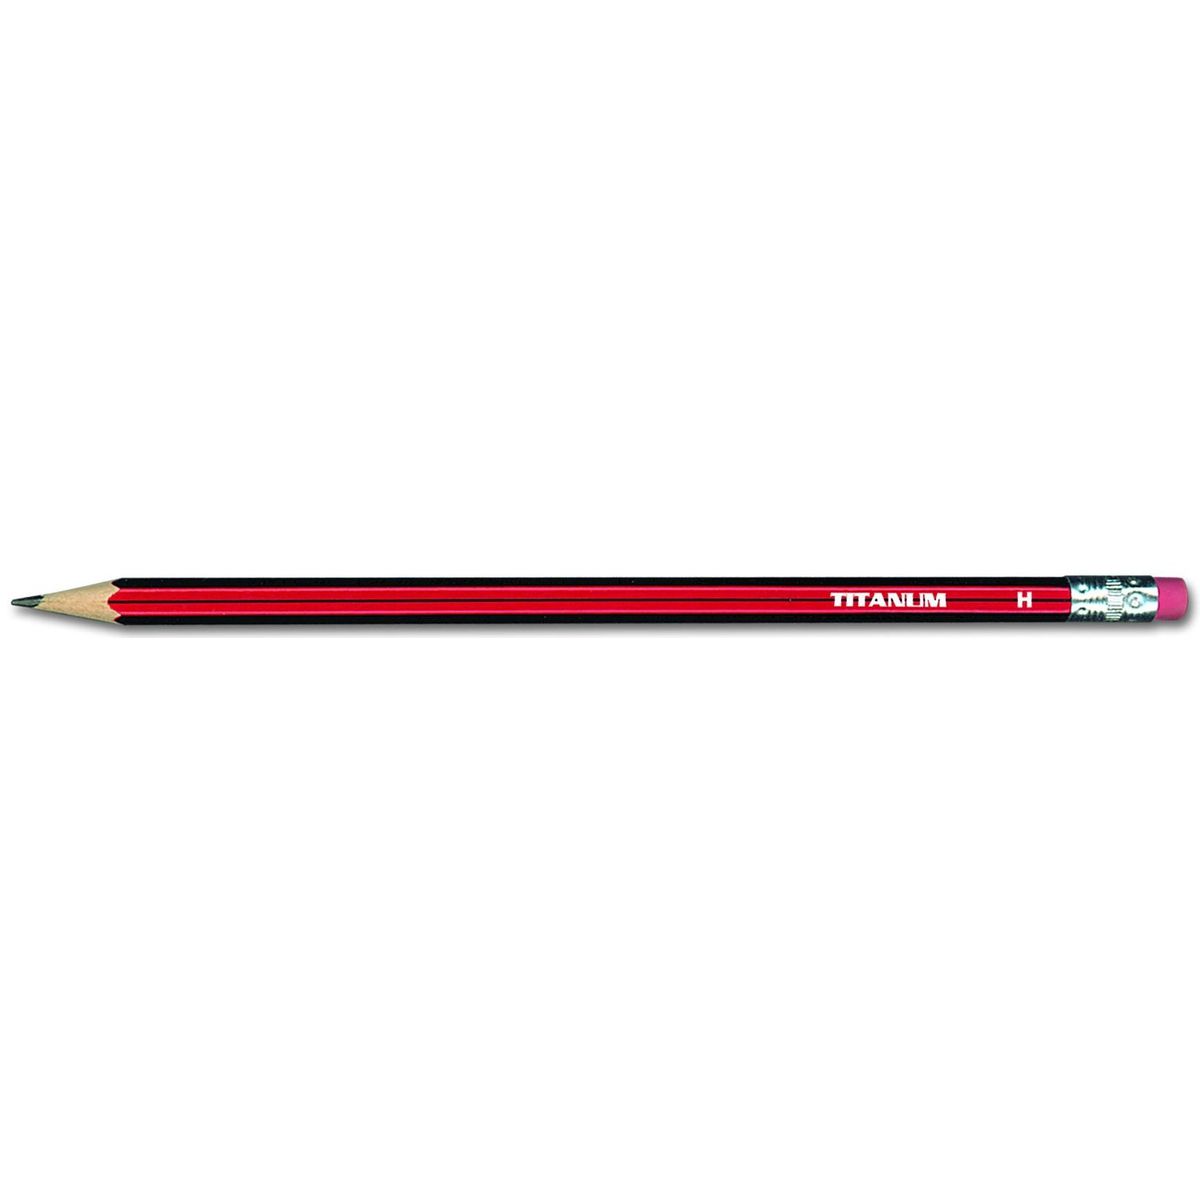 Ołówek techniczny Titanum H z gumką 12 szt.